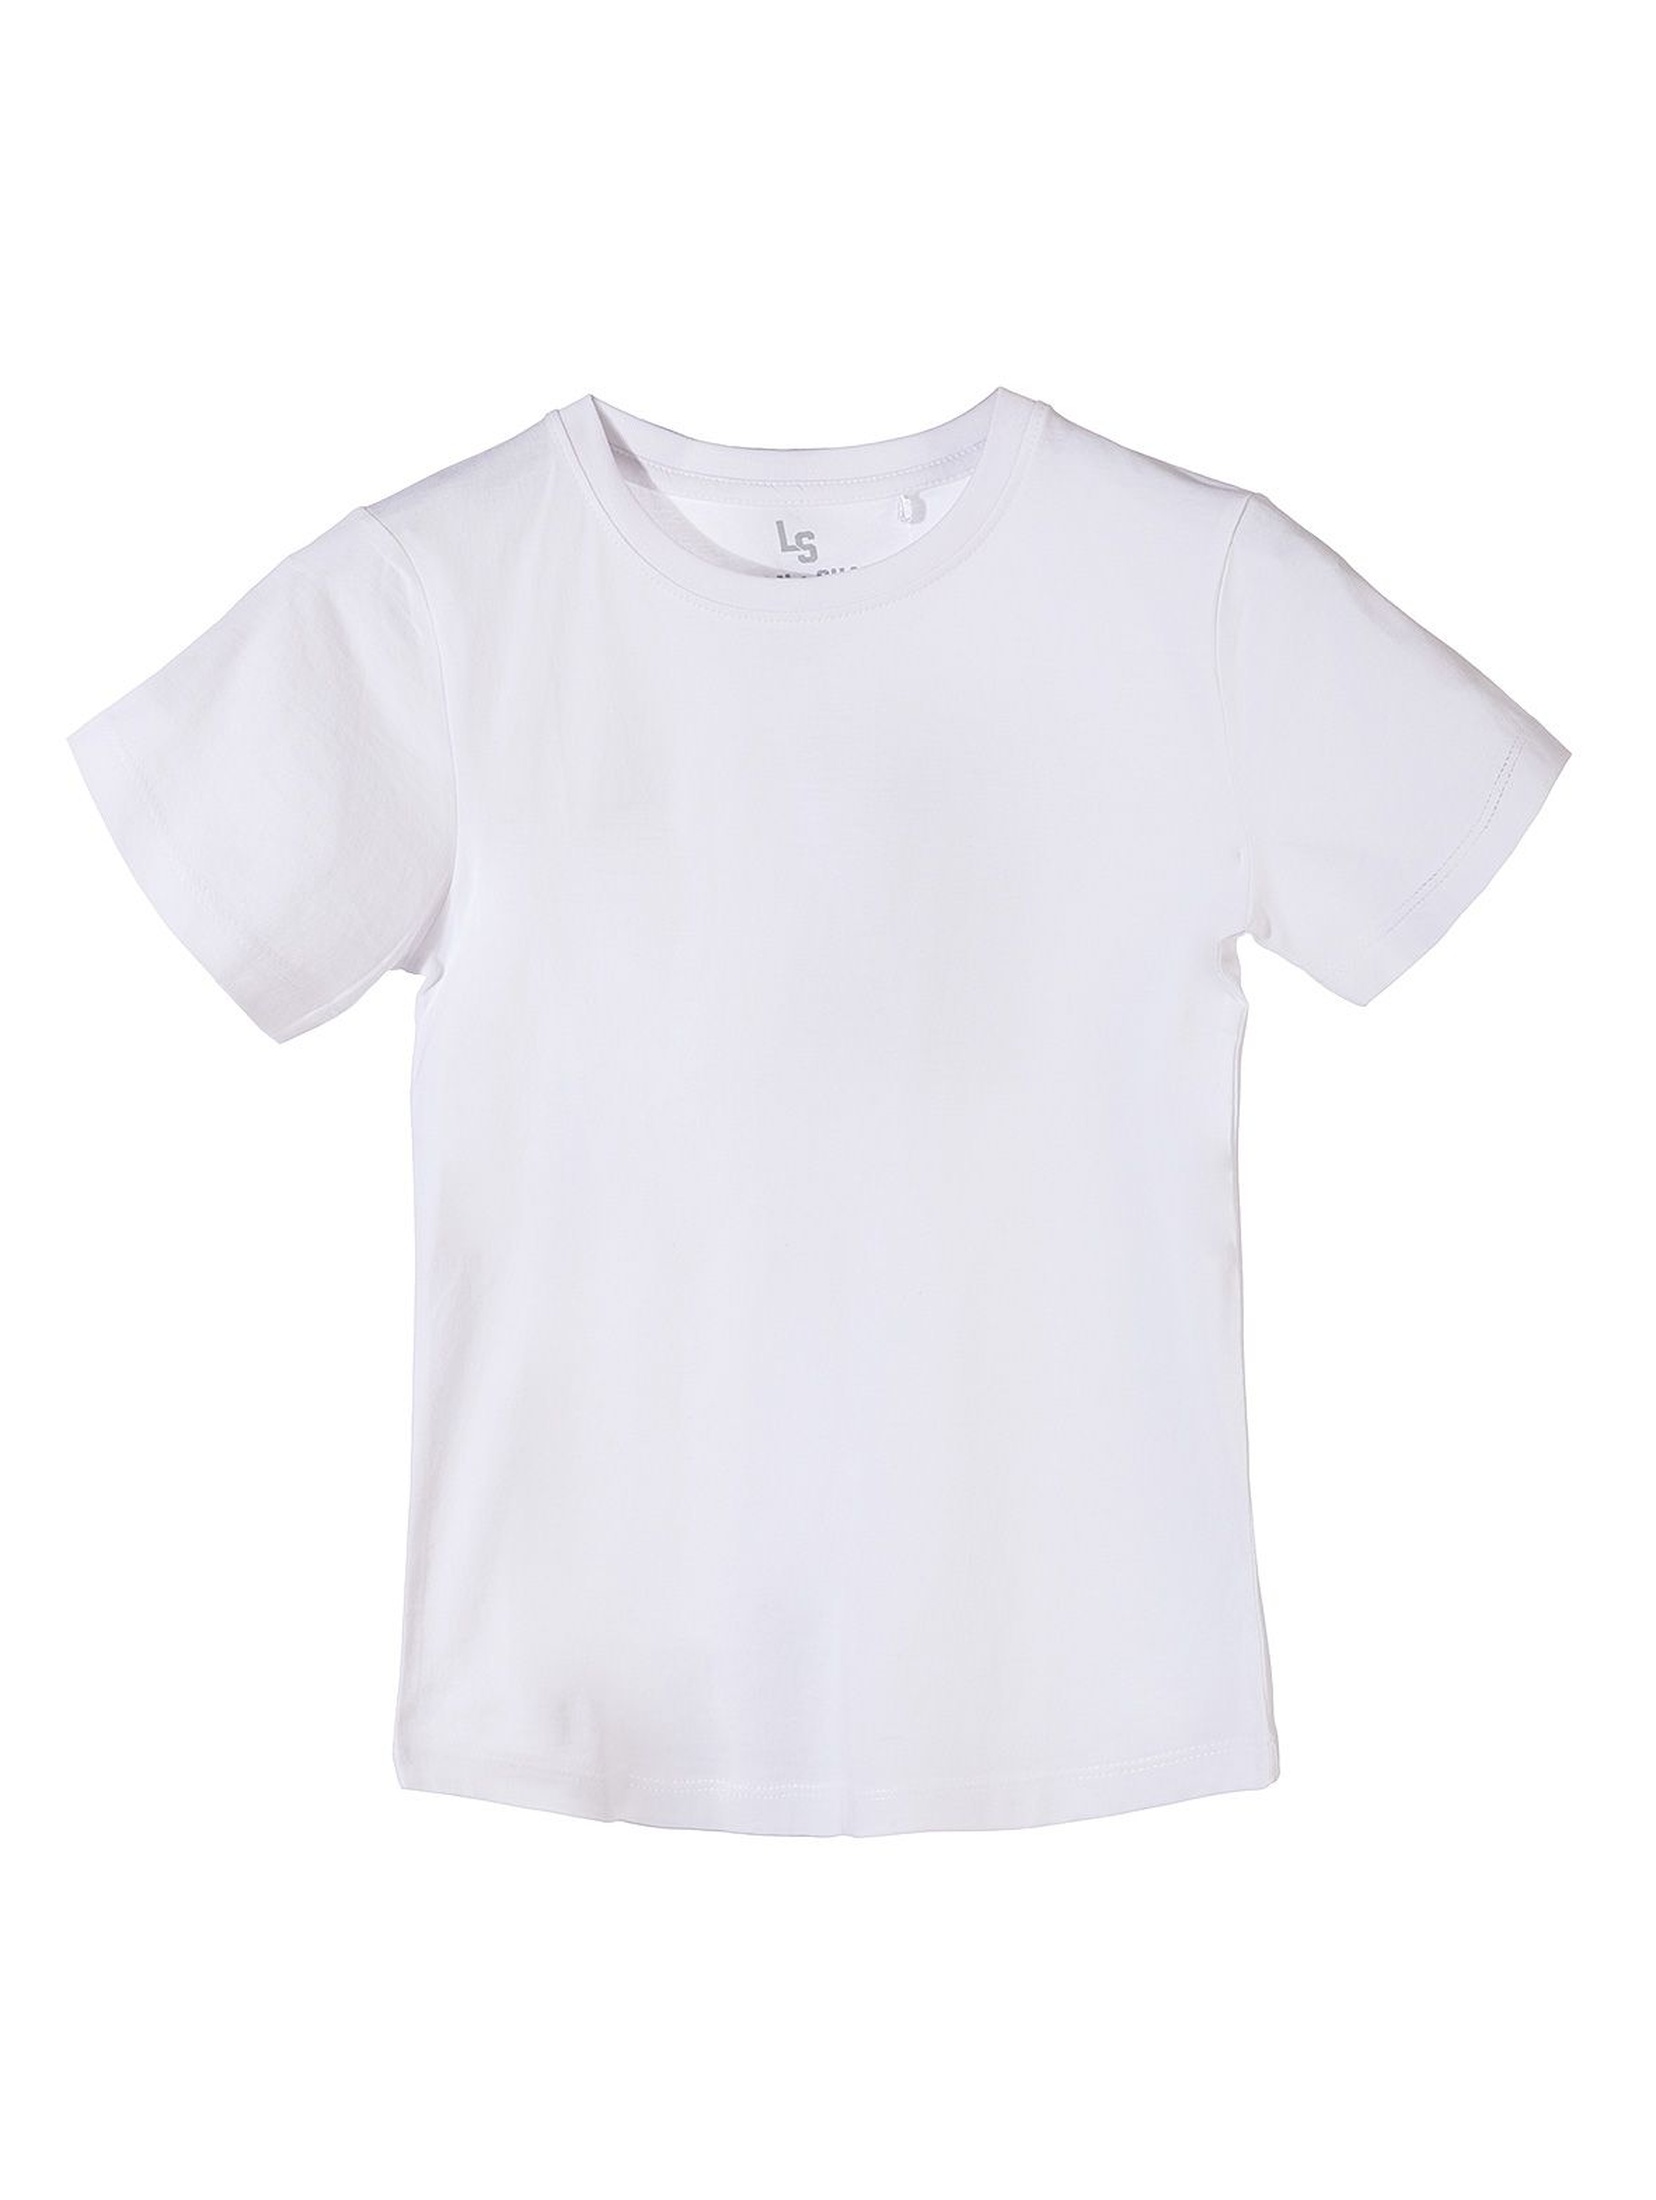 T-shirt chłopięcy biały gładki basic